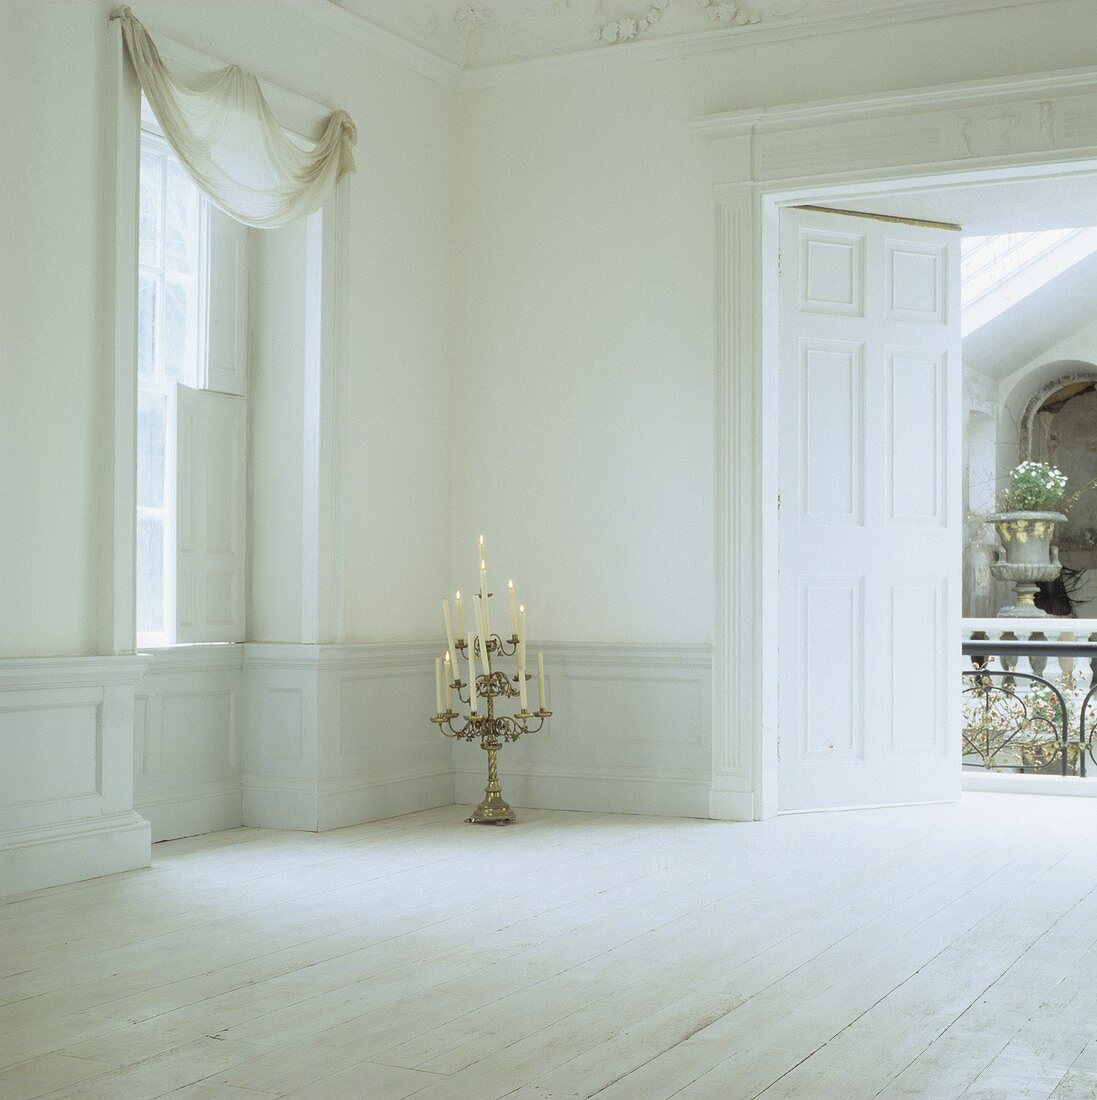 Weisser, unmöblierter Raum im Georgian Stil mit mehrstöckigem Leuchter mit brennenden Kerzen auf weißem Dielenboden